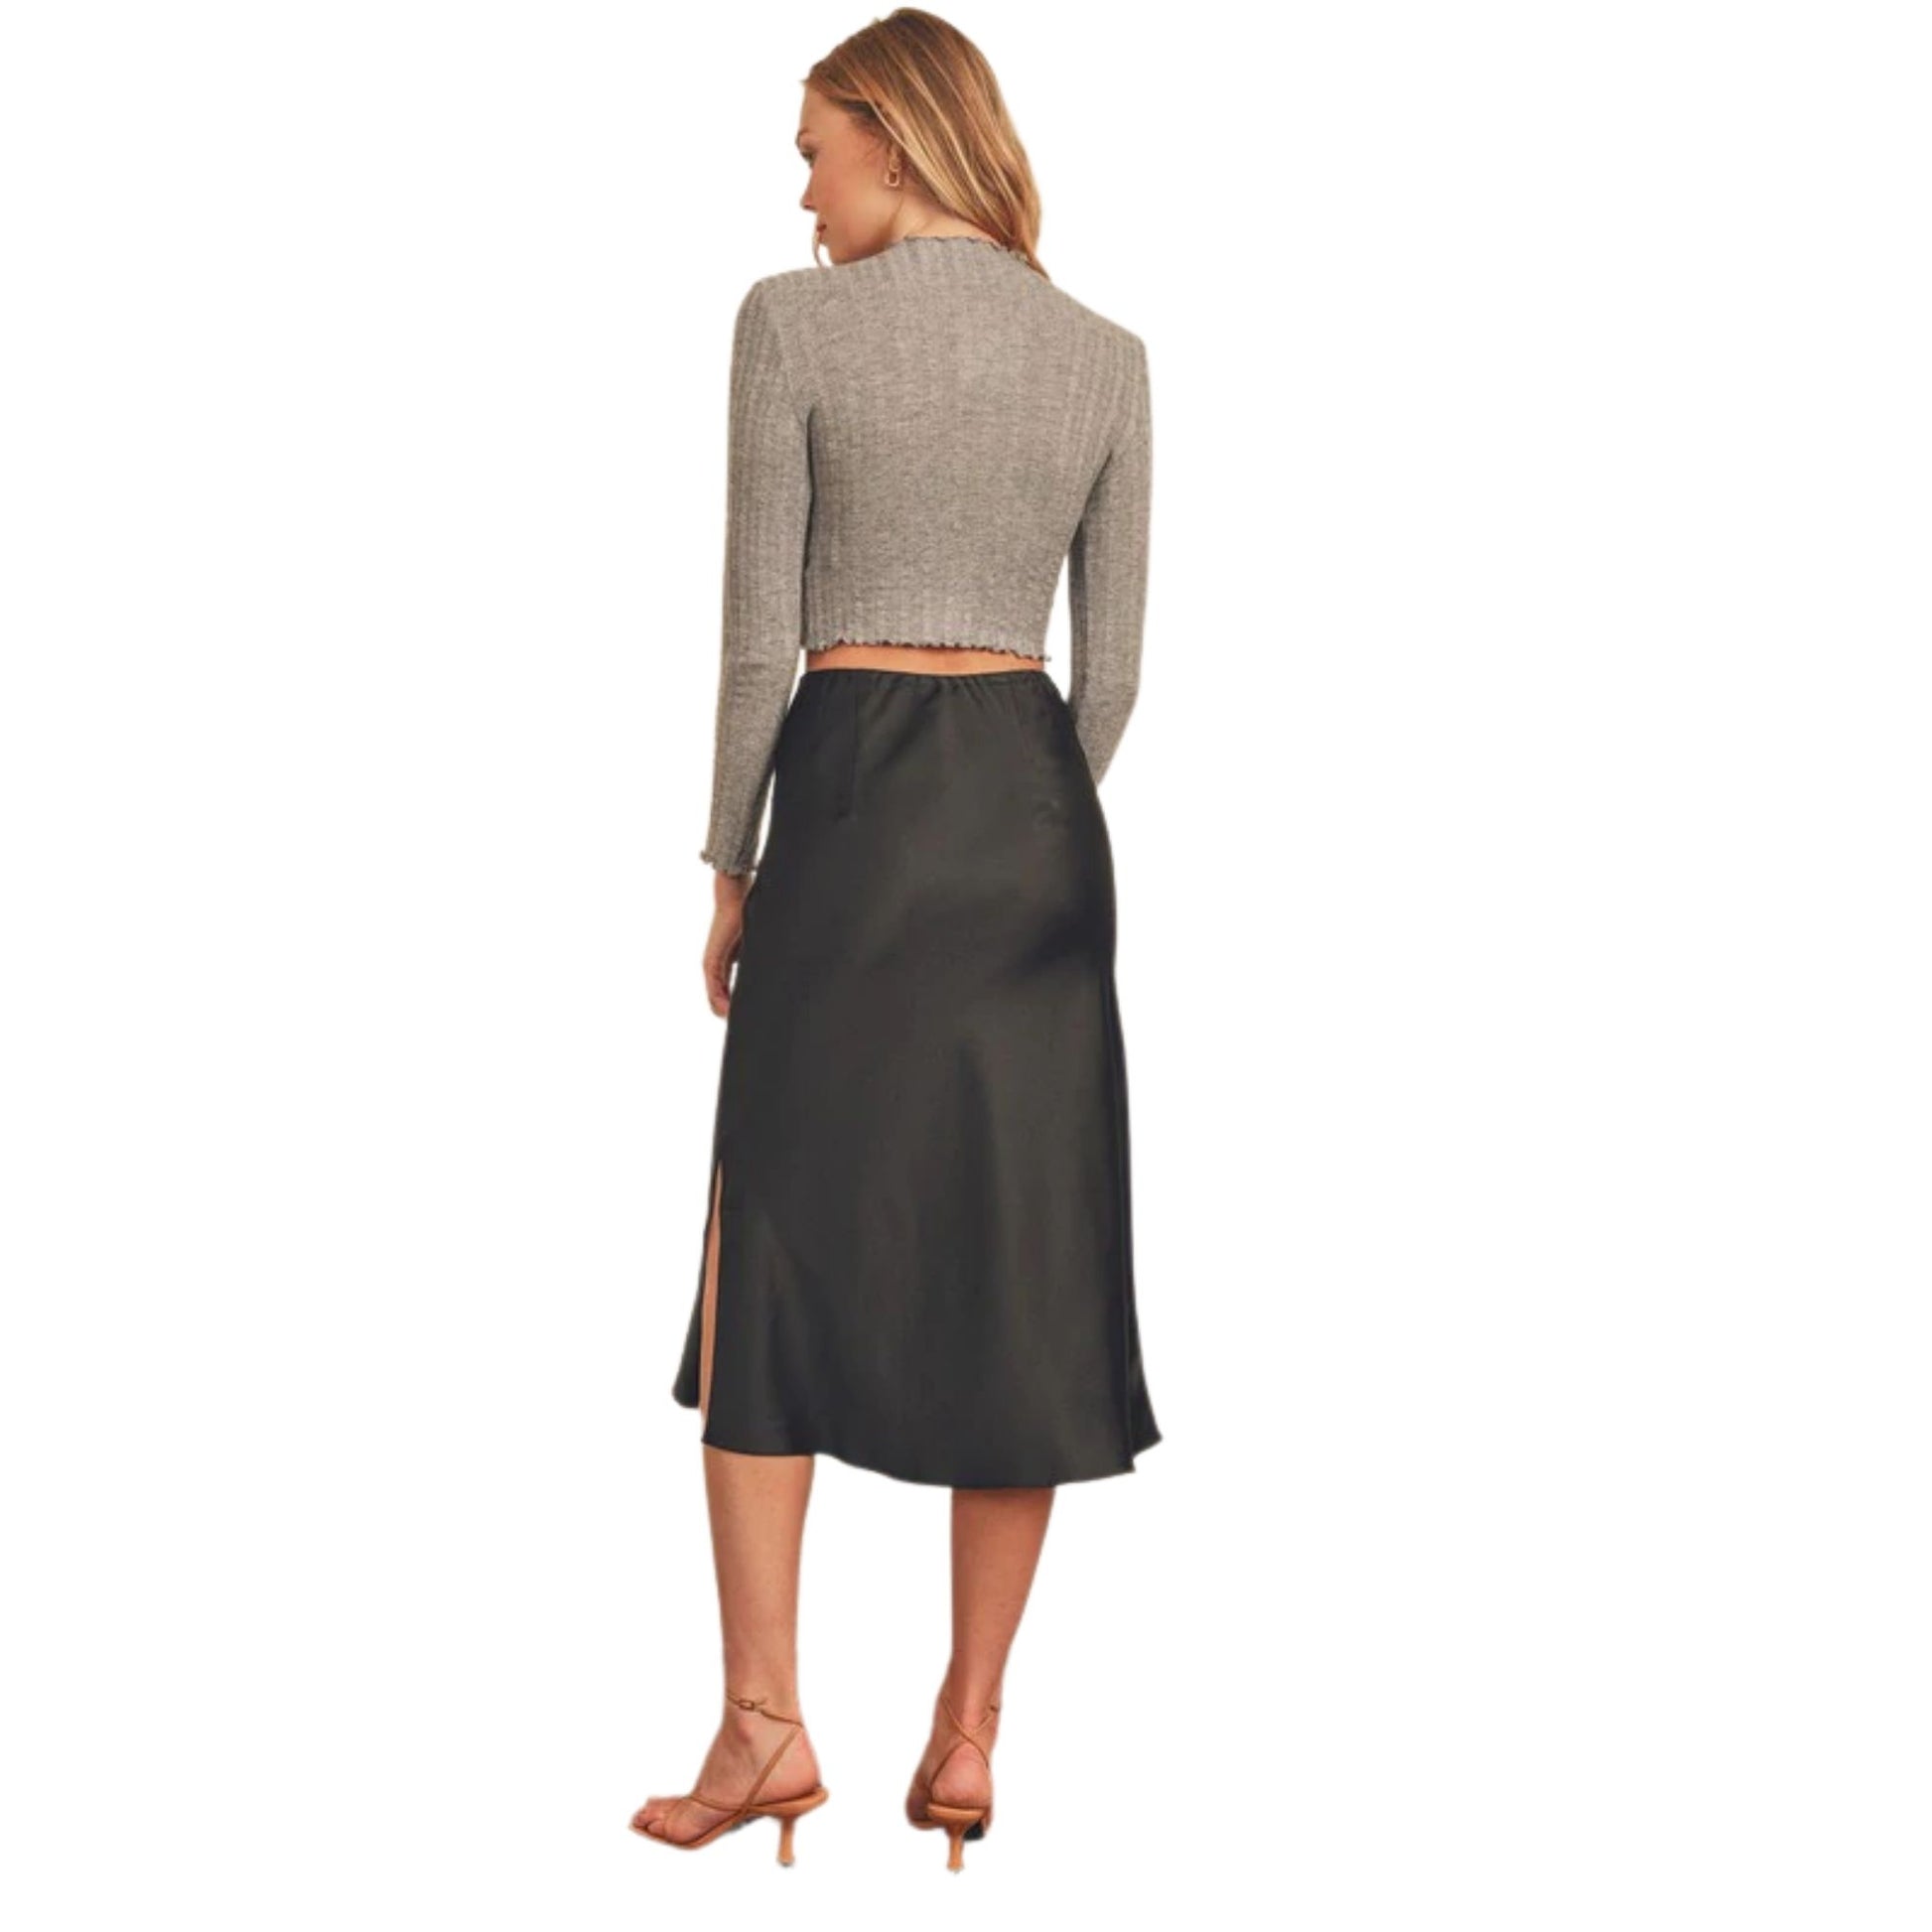 Black Satin Mid-length Slip Skirt with a Side Slit